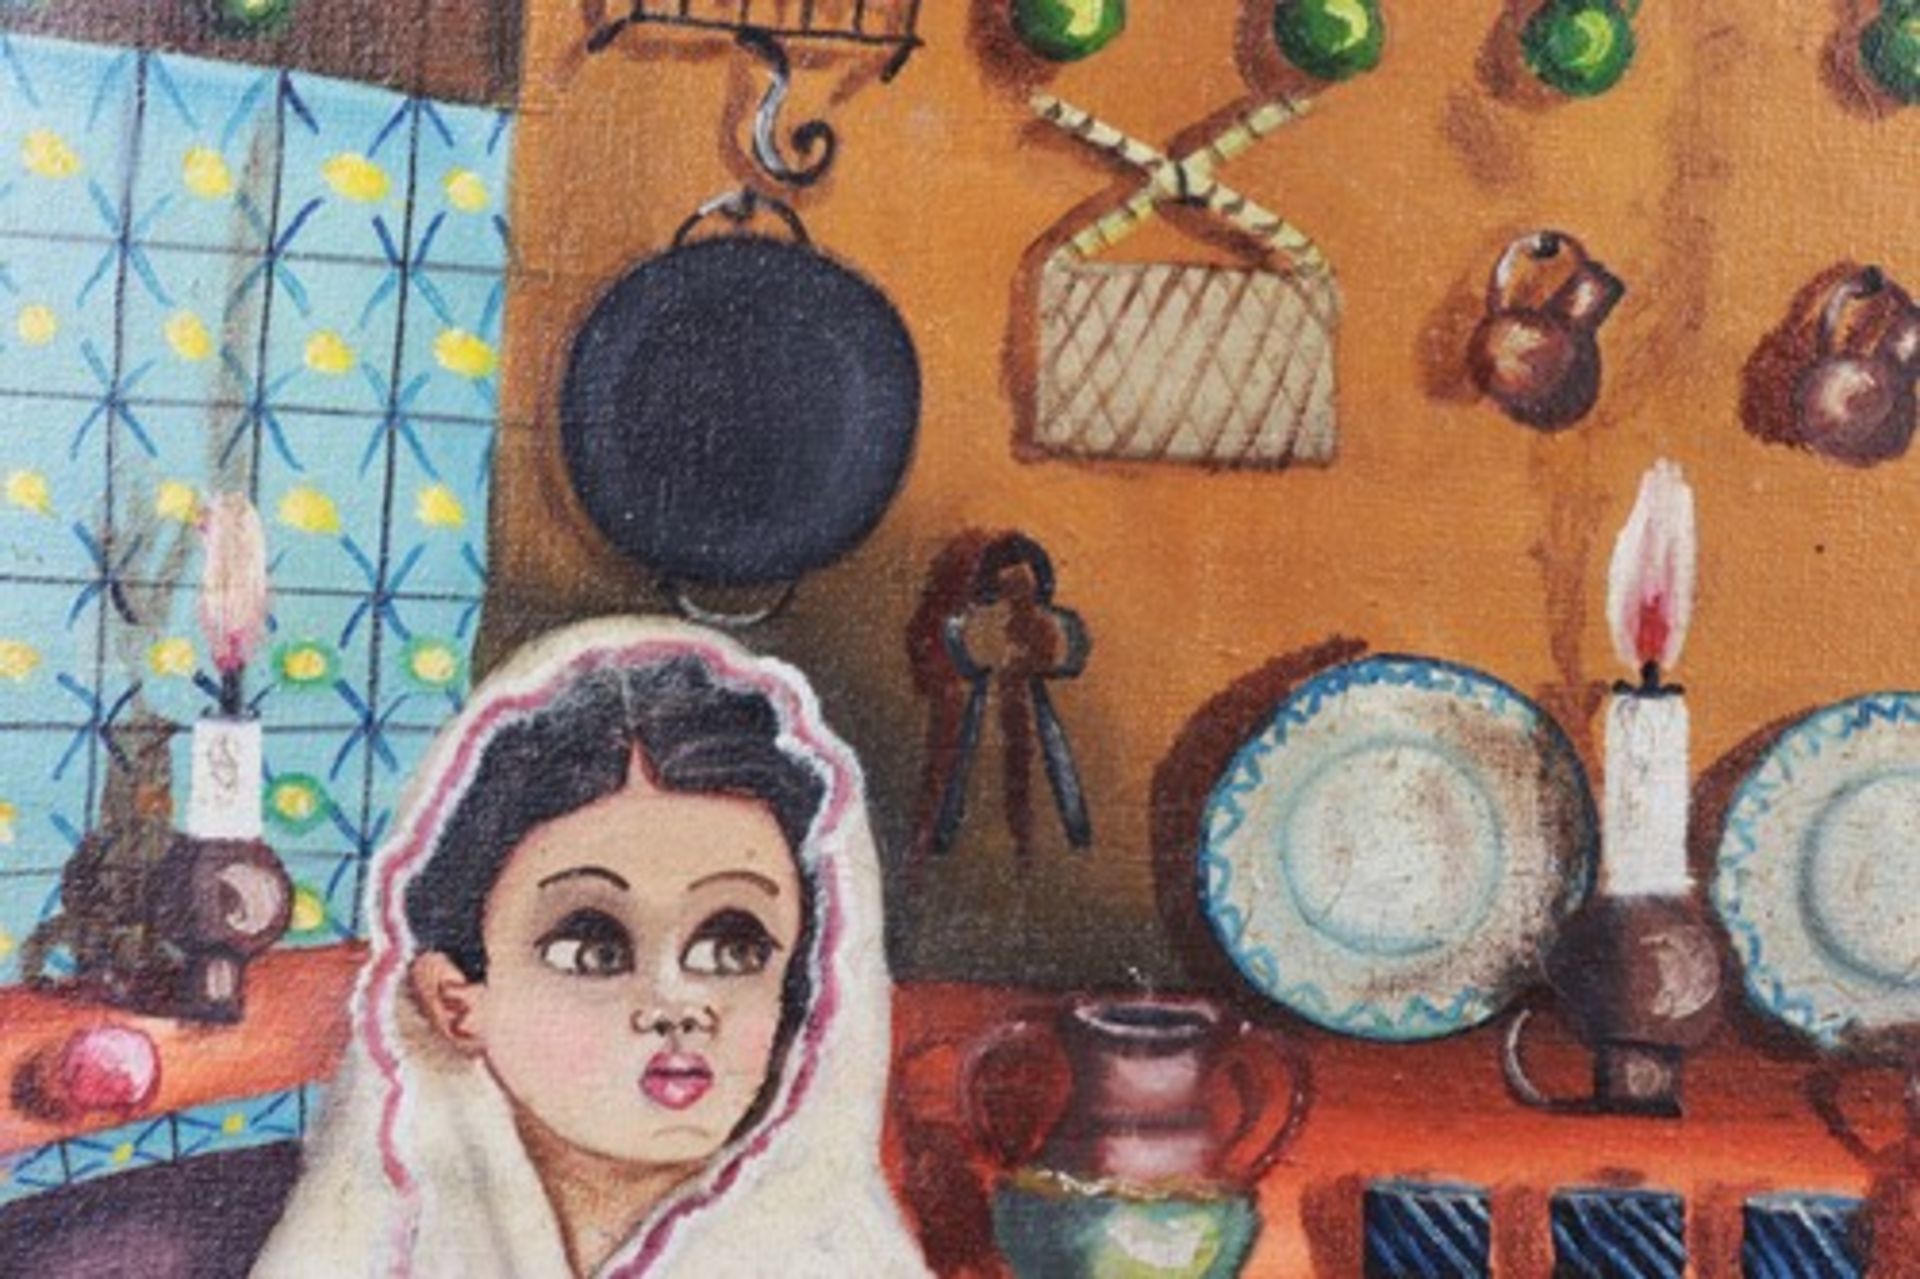 Labios, Roberto Agapito1898-1996, mexikanischer Künstler, "Mädchen in der Küche", Öl/Lwd., flächiger - Bild 3 aus 5